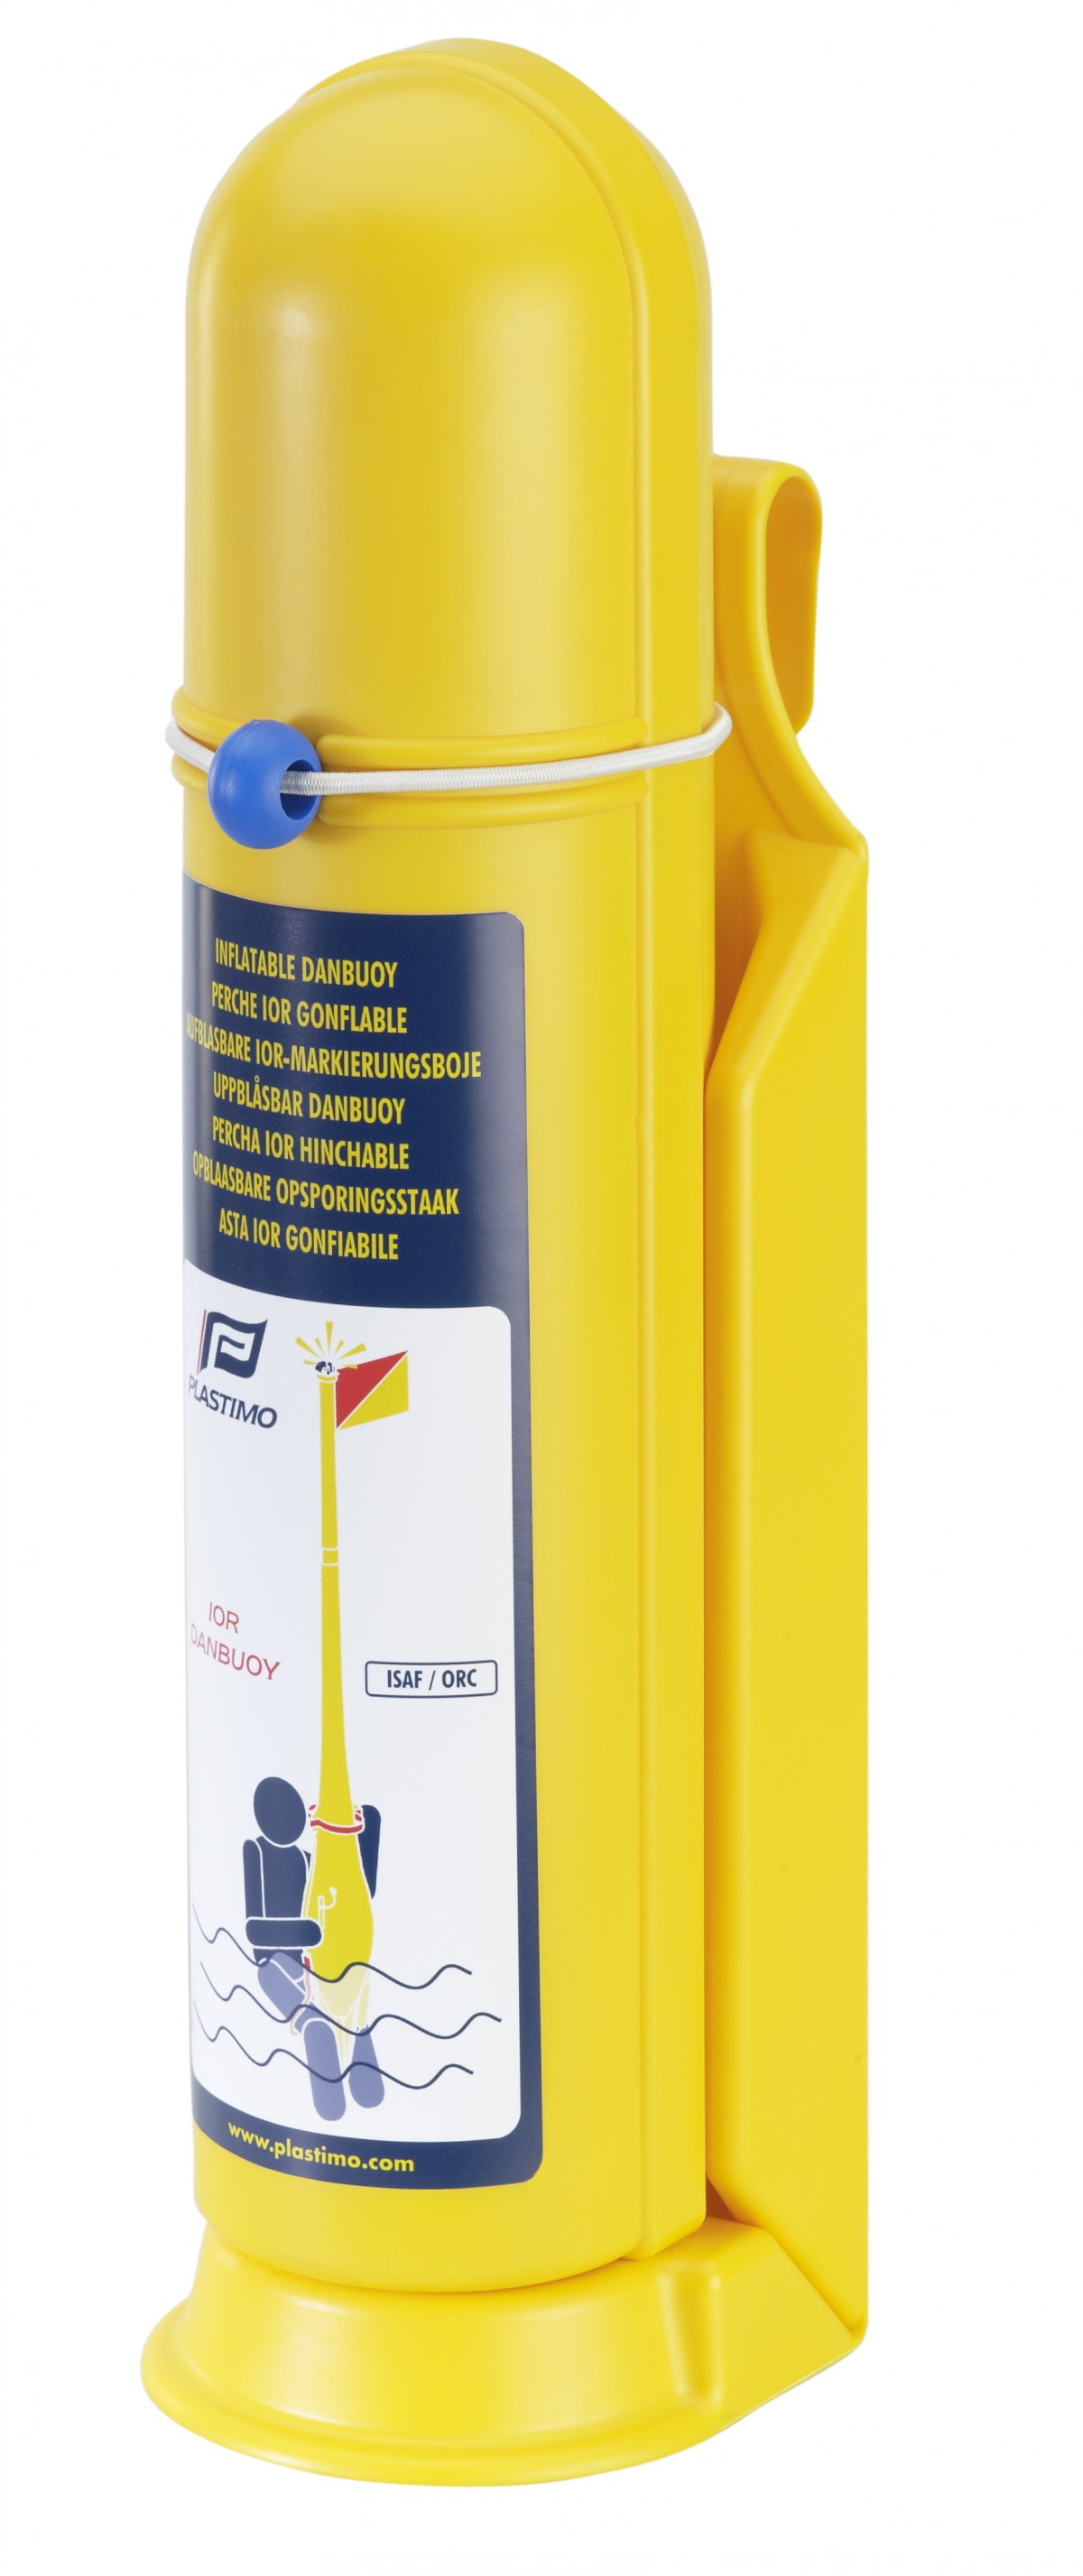 Plastimo Inflatable IOR Dan Buoy, Yellow